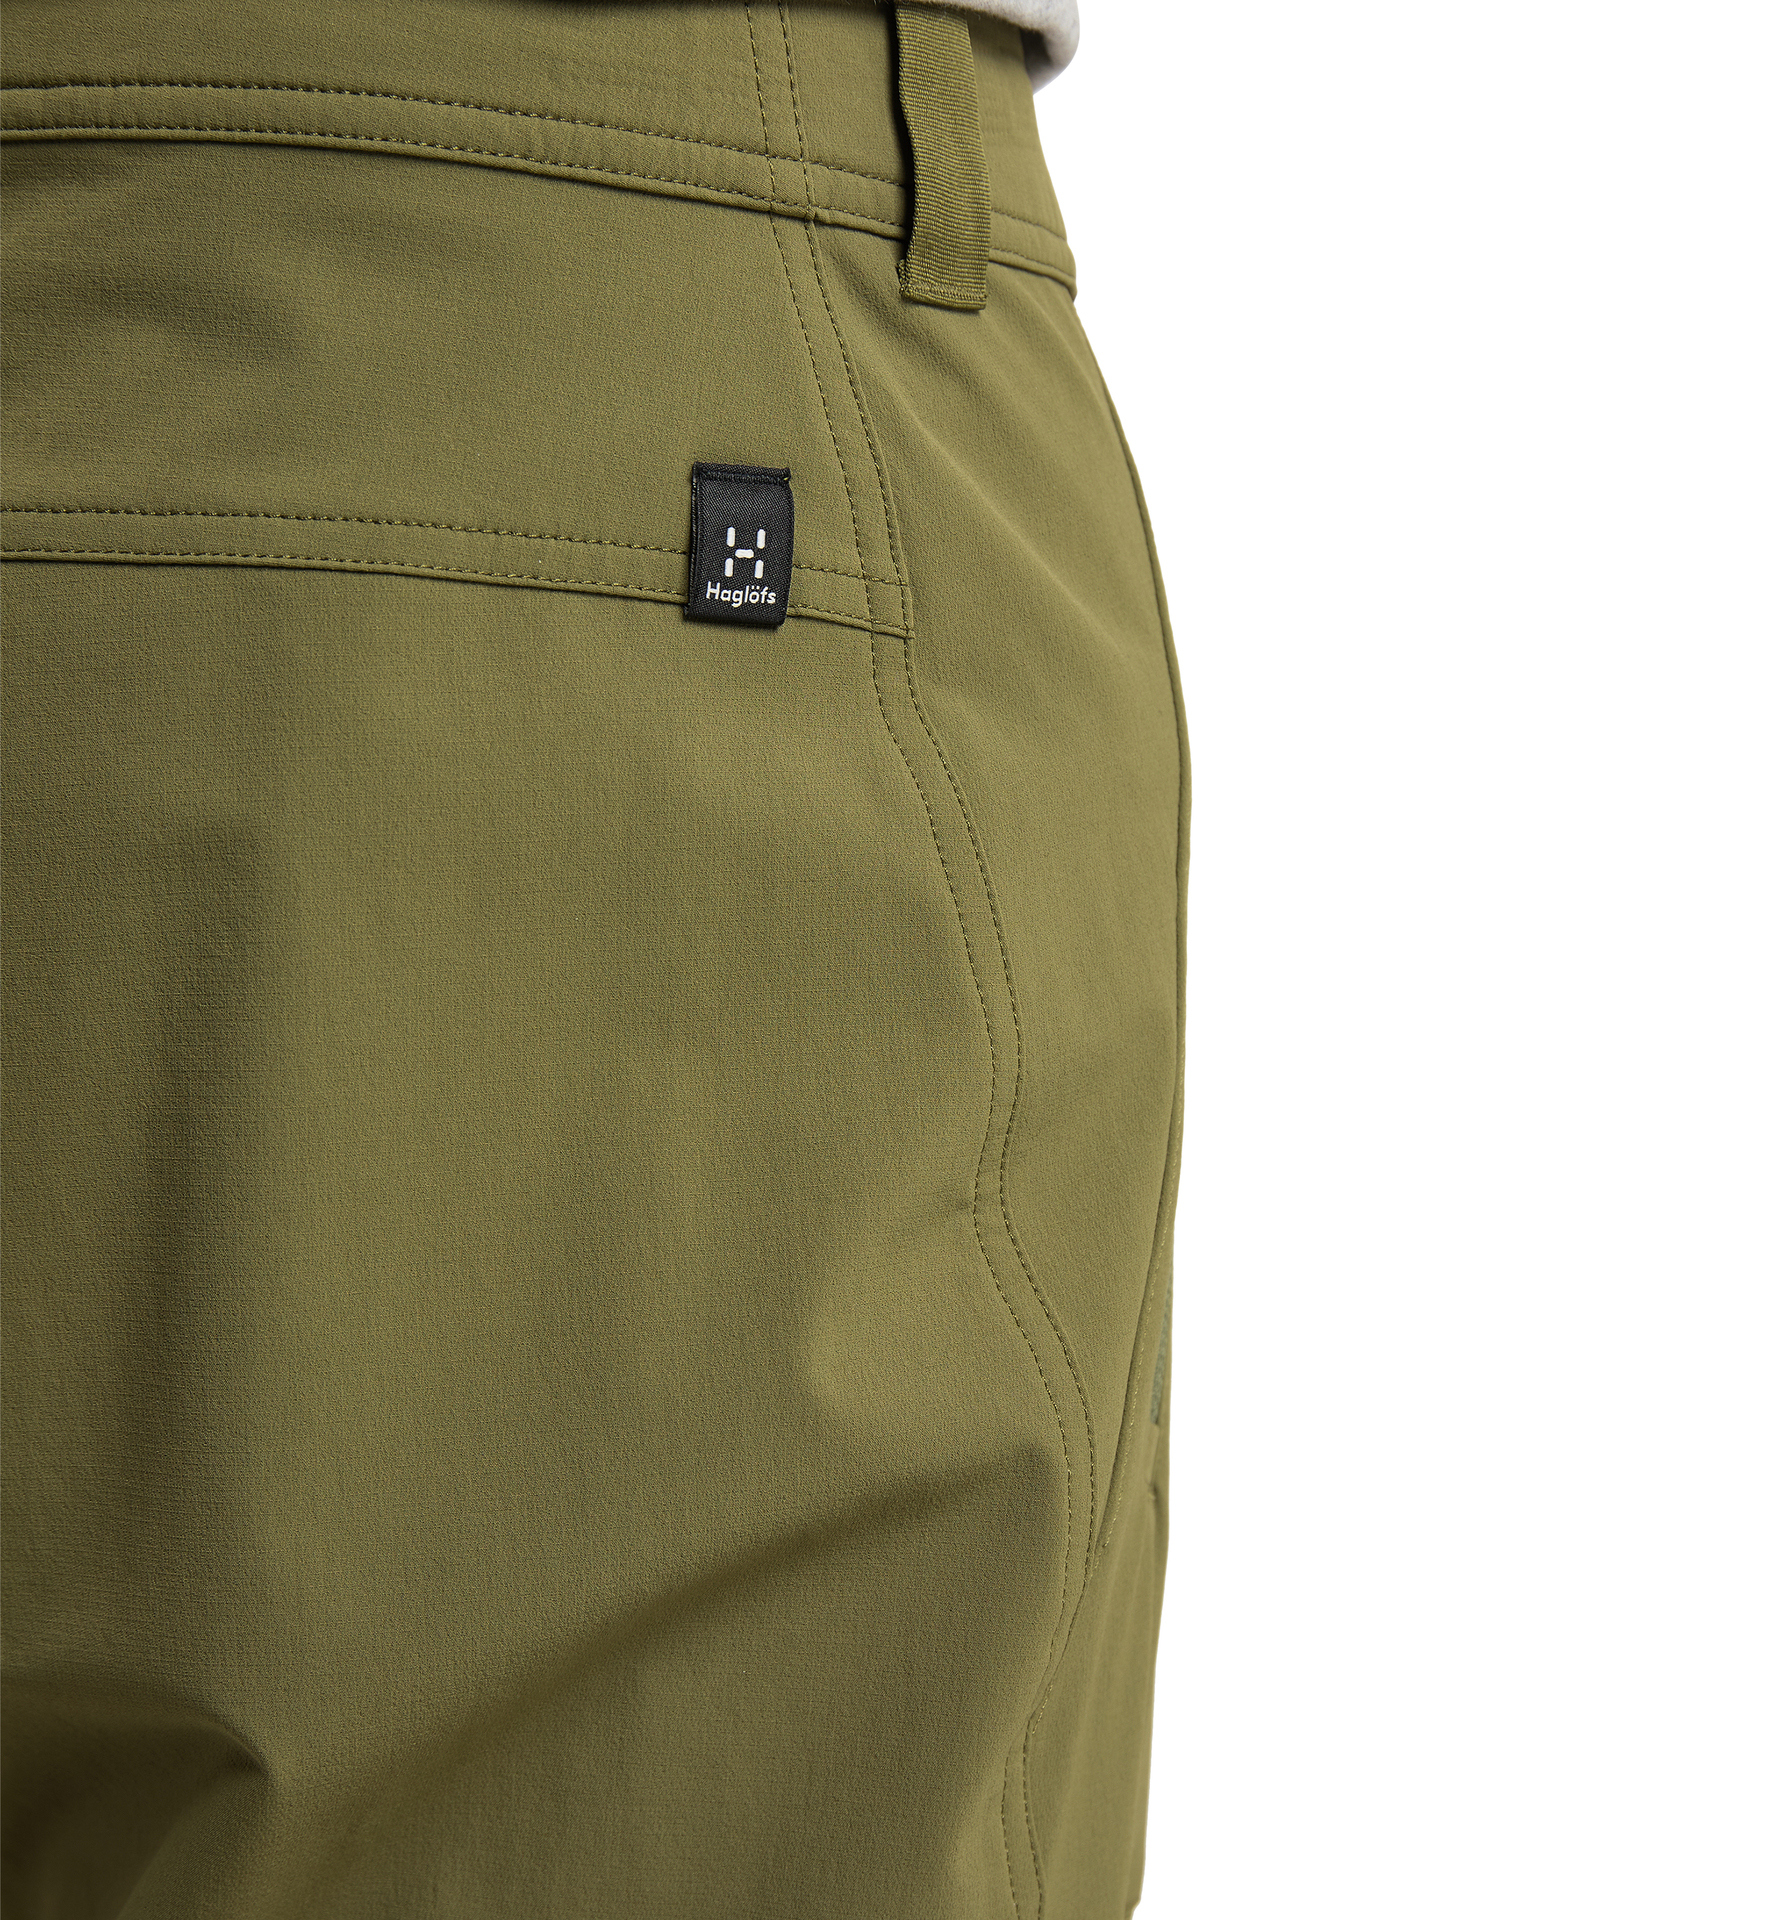 HAGLOFS LIM PROOF / BLISS Waterproof Trousers Men Size S Outdoor Hiking  DZ3315 | eBay